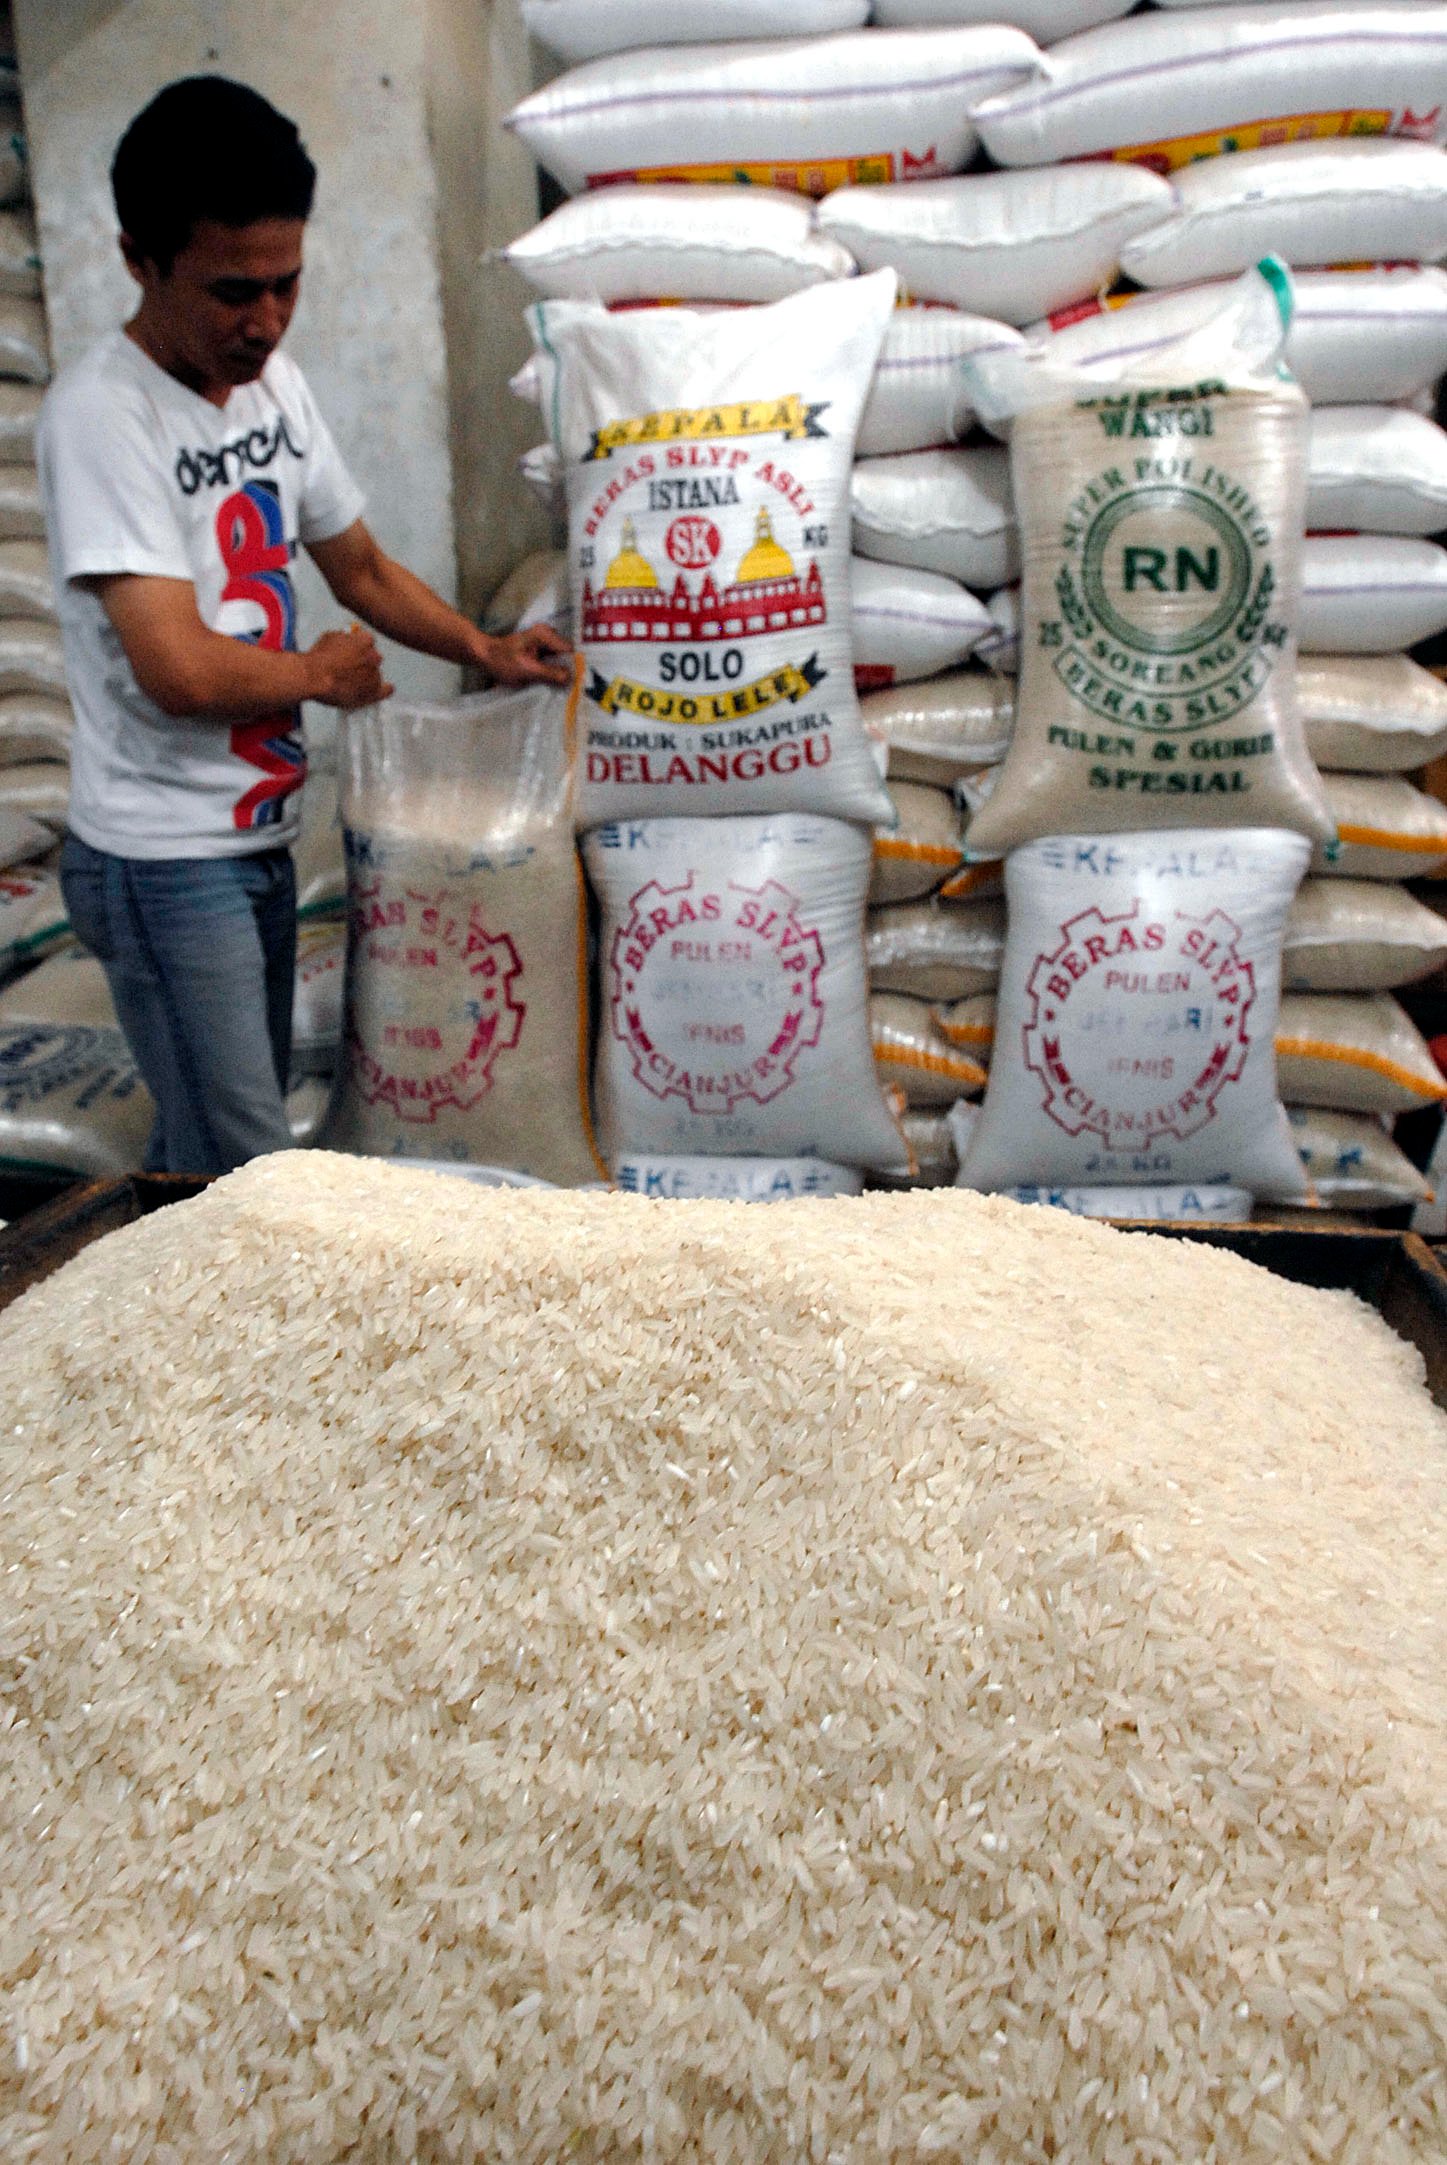  FOTO: Pemerintah siap jinakan harga beras